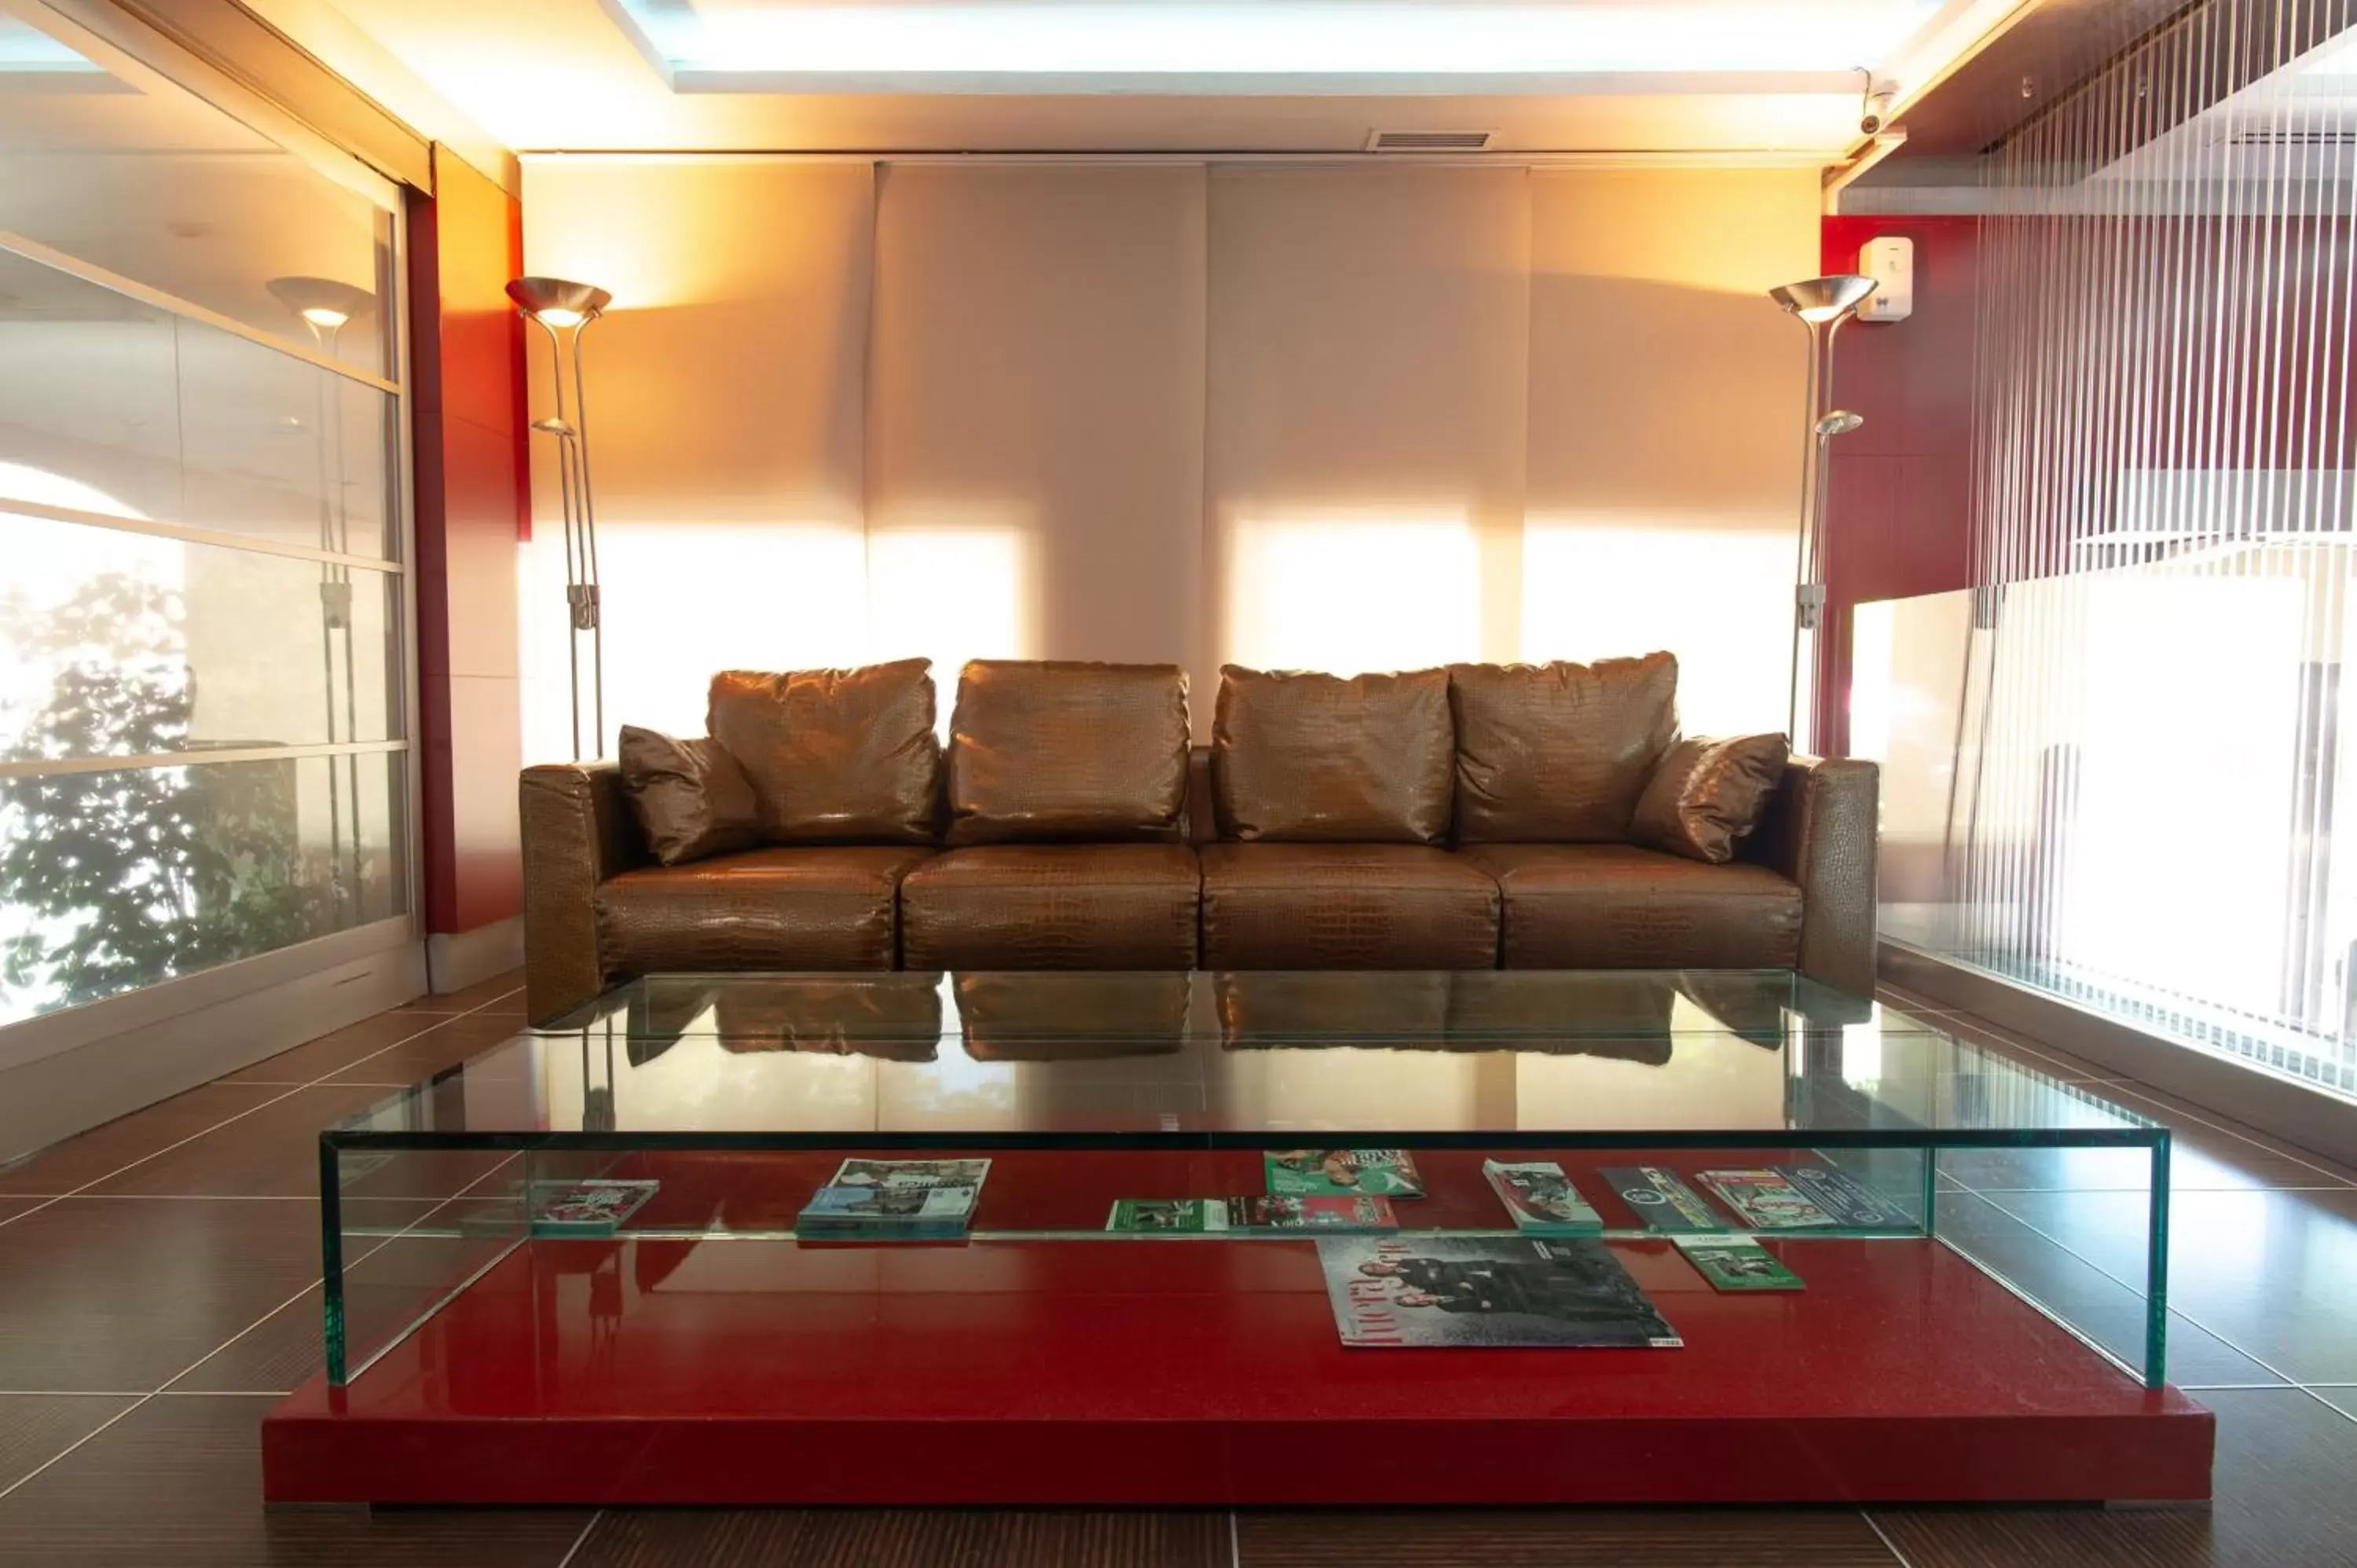 Lobby or reception, Seating Area in Hotel Villa de Barajas